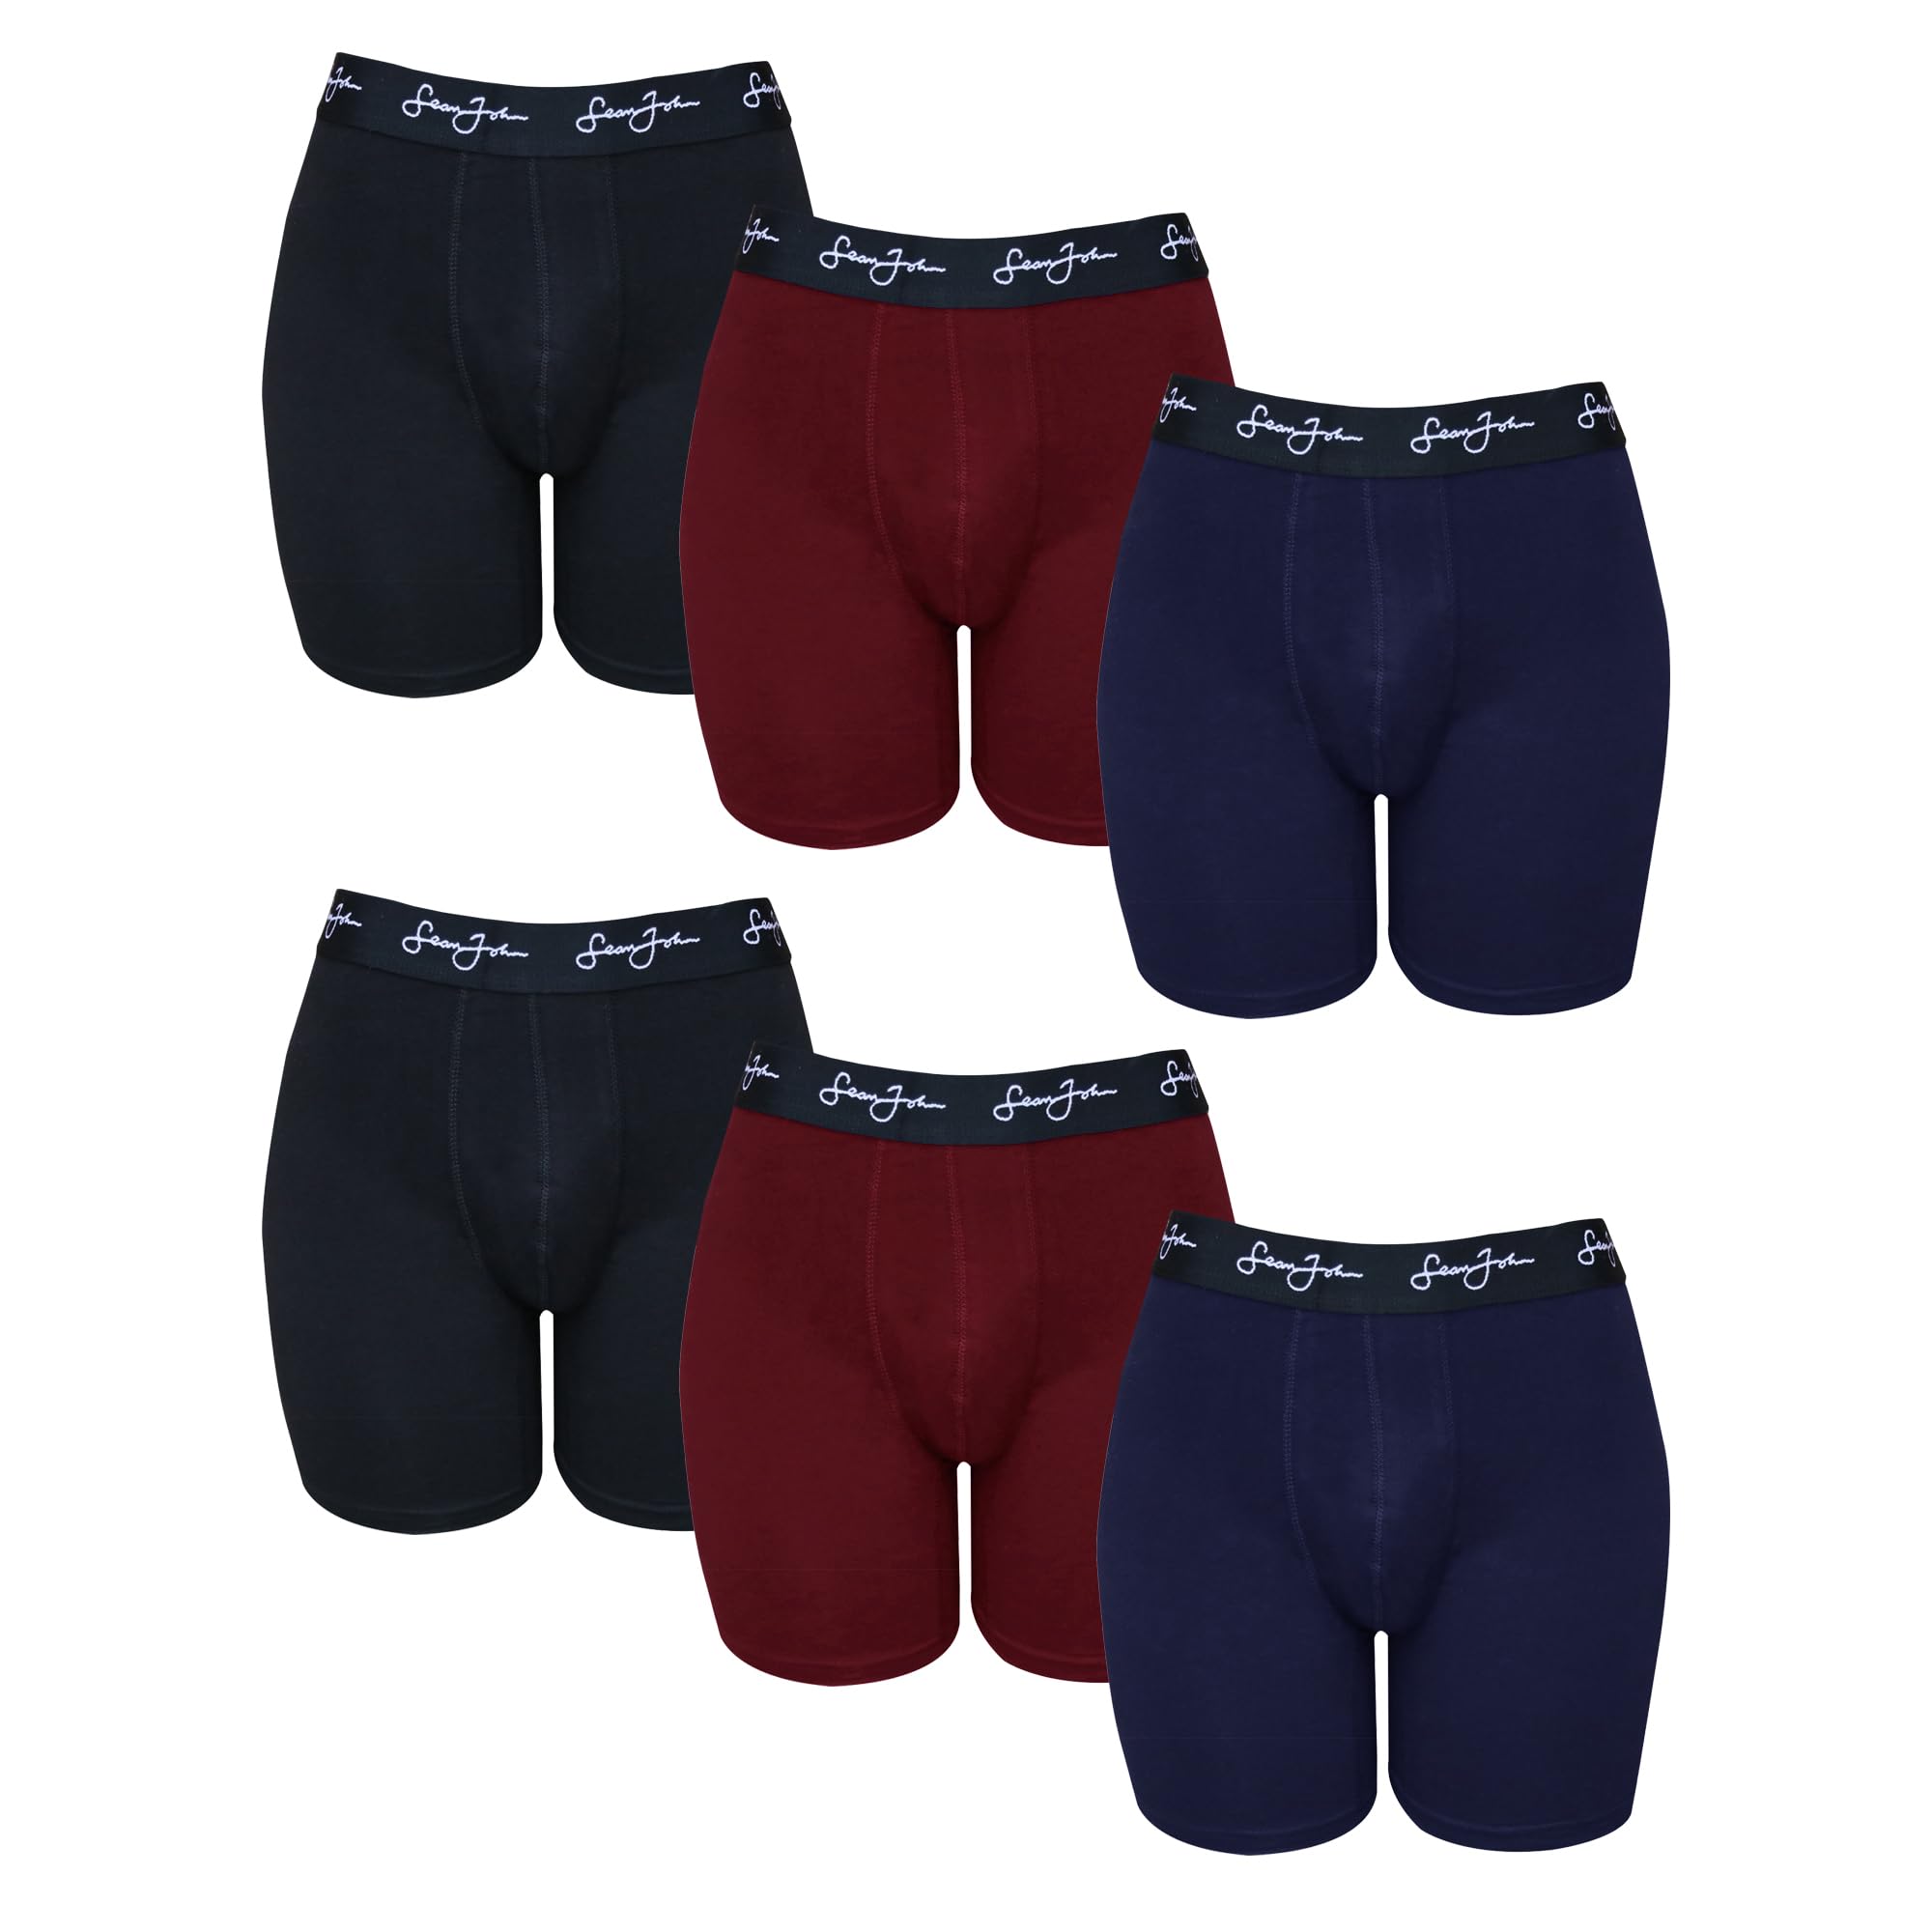 Sean John Herren-Boxershorts, atmungsaktive Baumwoll-Unterwäsche für Herren, 6er-Pack, Baumwoll-Stretch-Unterwäsche, Schwarz/Blau/Rot, Large